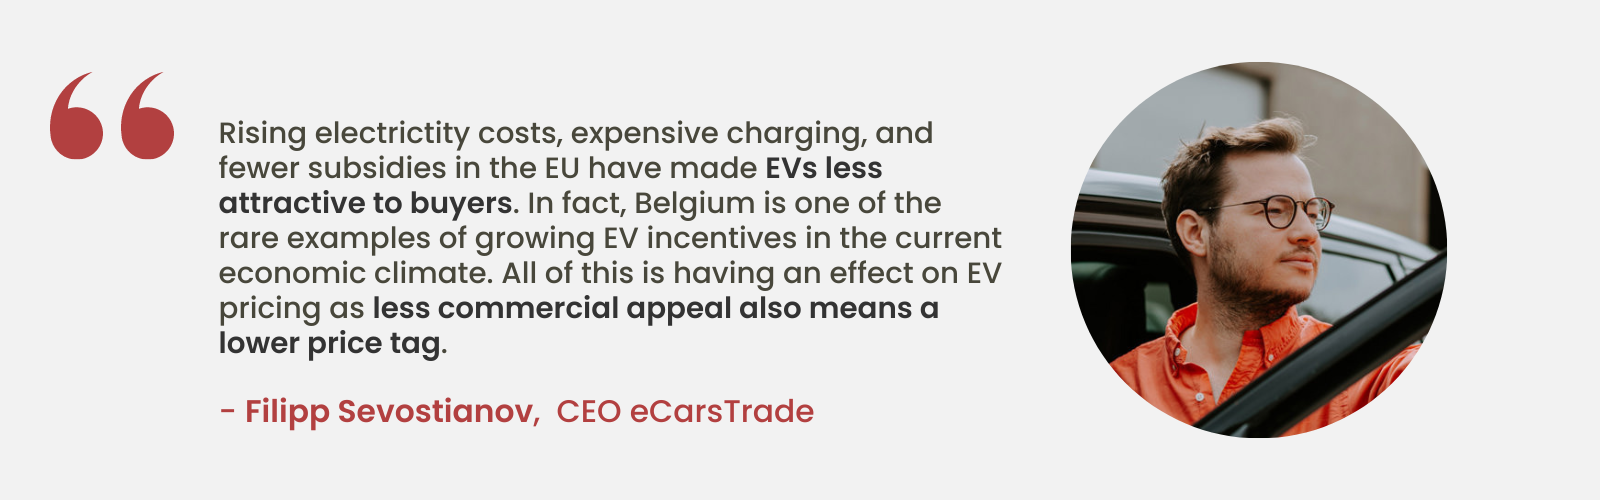 Ekspertyza Filippa Sevostianova, dyrektora generalnego eCarsTrade, na temat malejącej atrakcyjności pojazdów elektrycznych ze względu na rosnące koszty i mniej dotacji w UE, podkreślająca wyjątkową pozycję Belgii w zakresie rosnących zachęt do pojazdów elektrycznych.